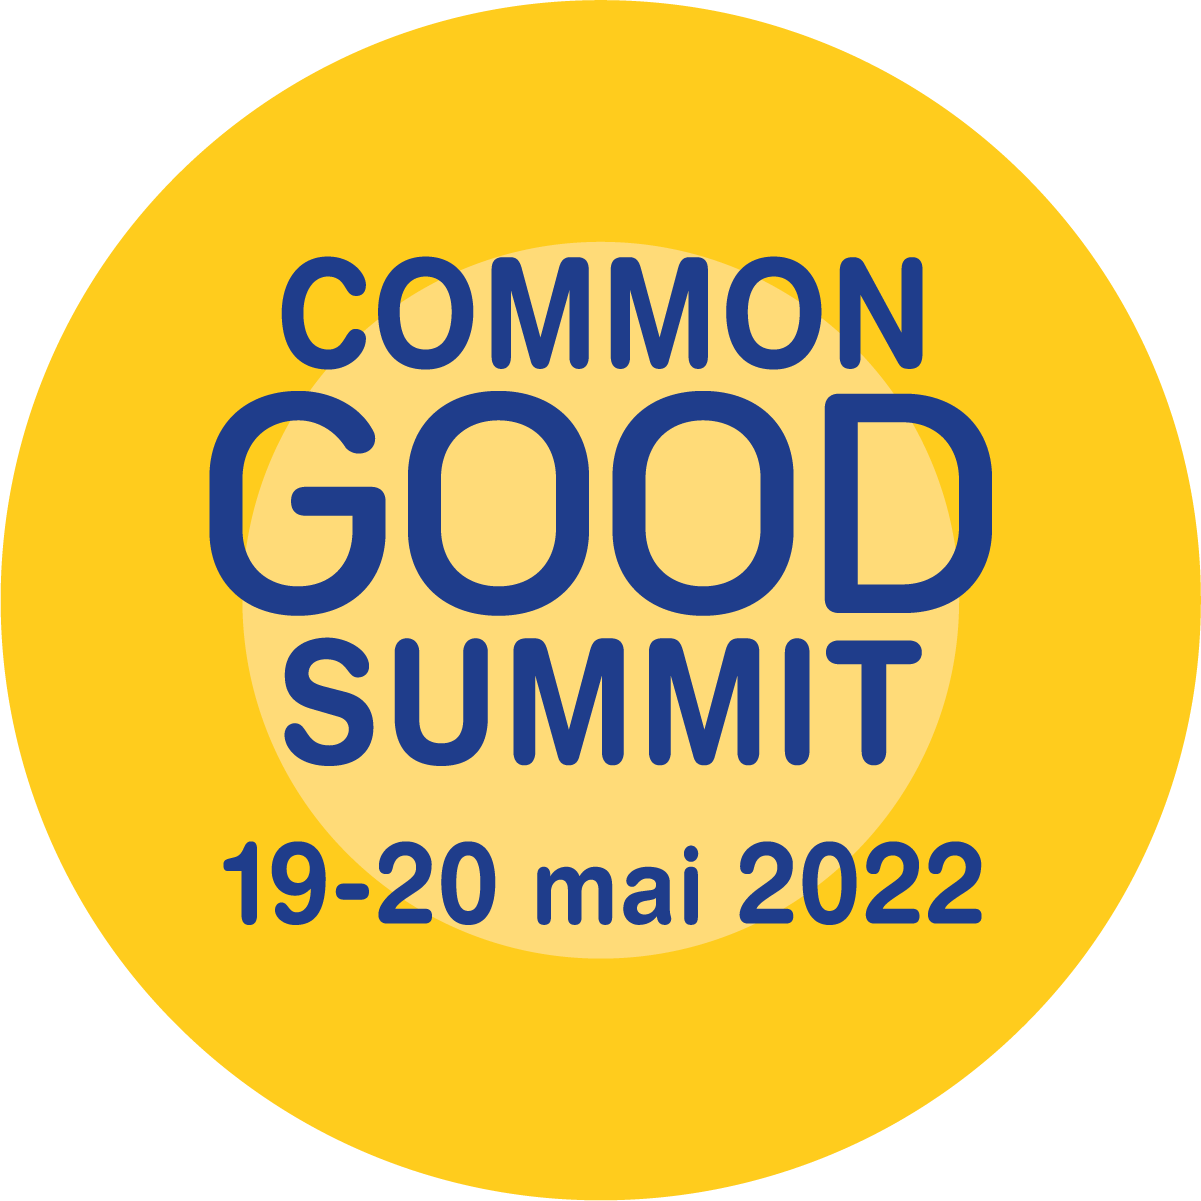 Common Good Summit 2022